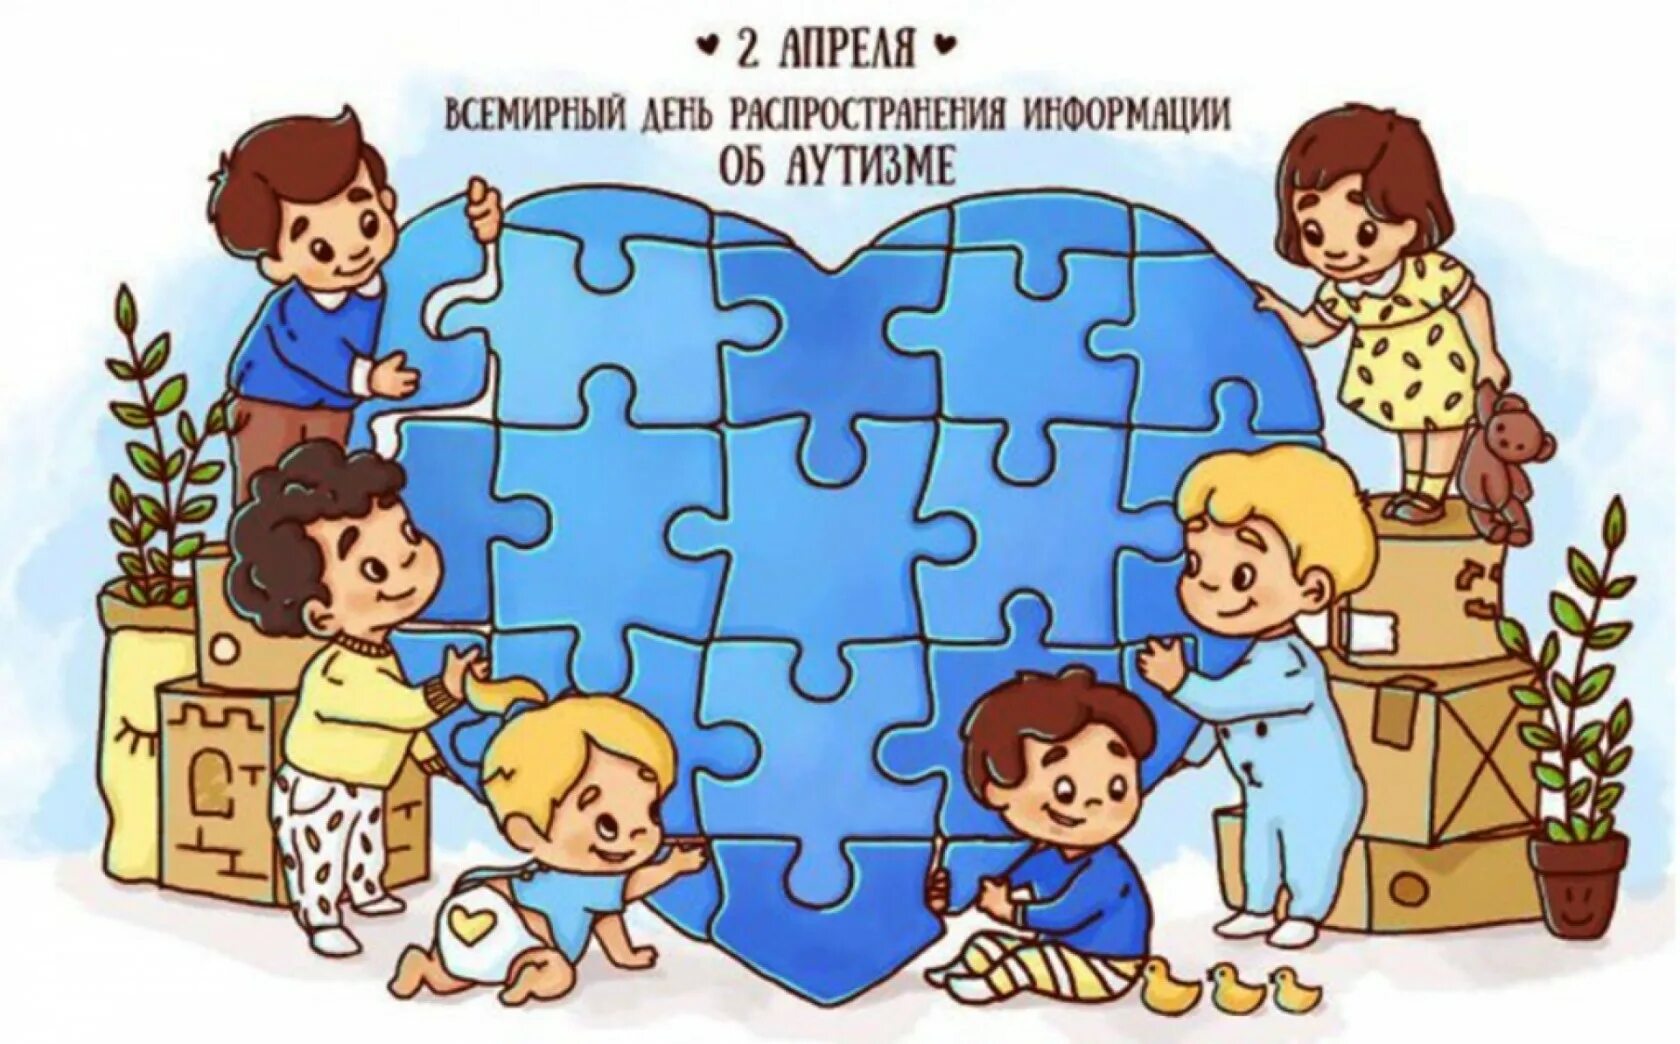 2 апреля картинка. Распространение информации об аутизме. Всемирный день аутизма. Всемирный день распространения информации о проблеме аутизма. Аутизм рисунки.